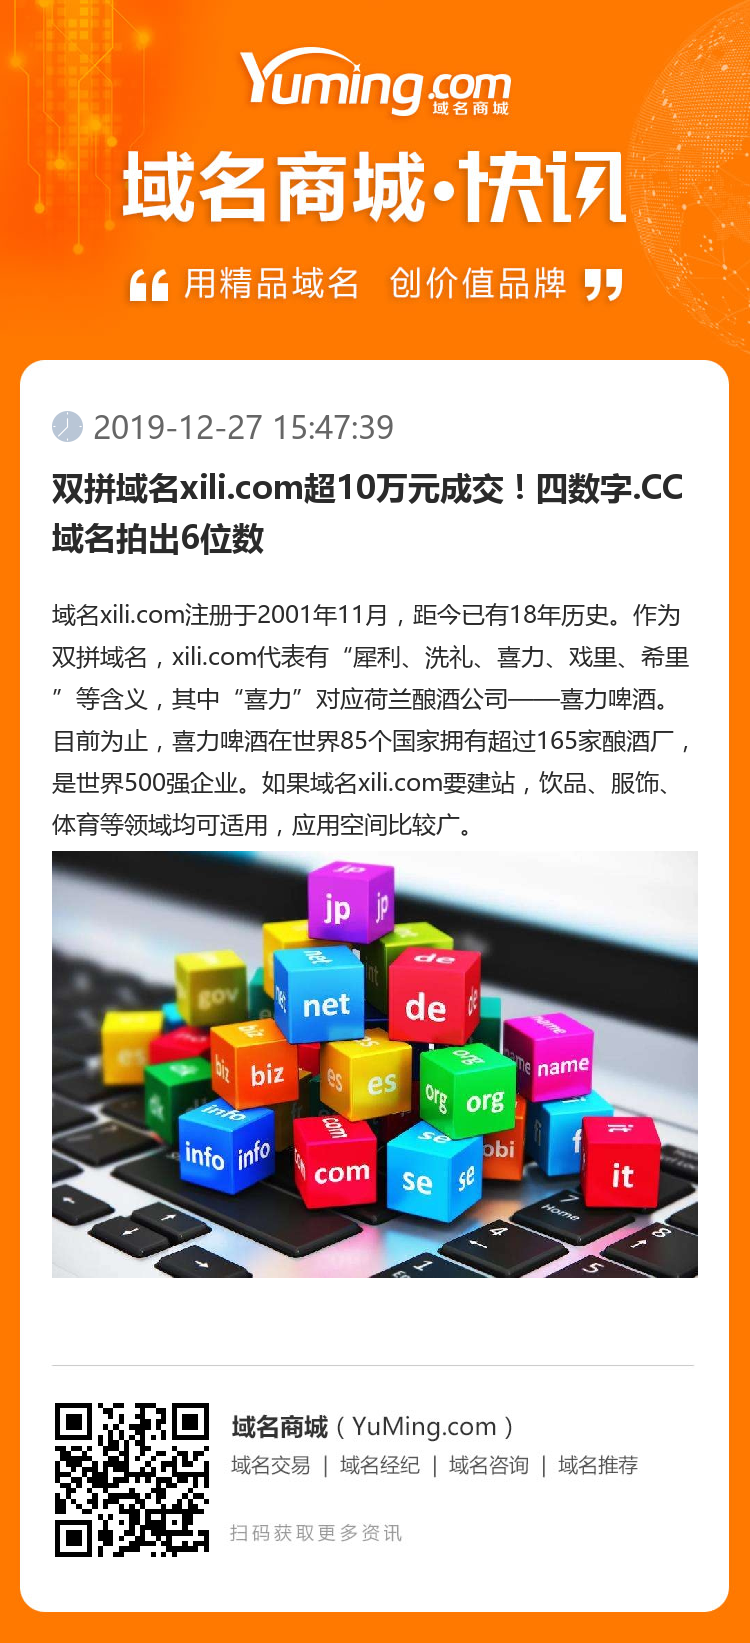 双拼域名xili.com超10万元成交！四数字.CC域名拍出6位数